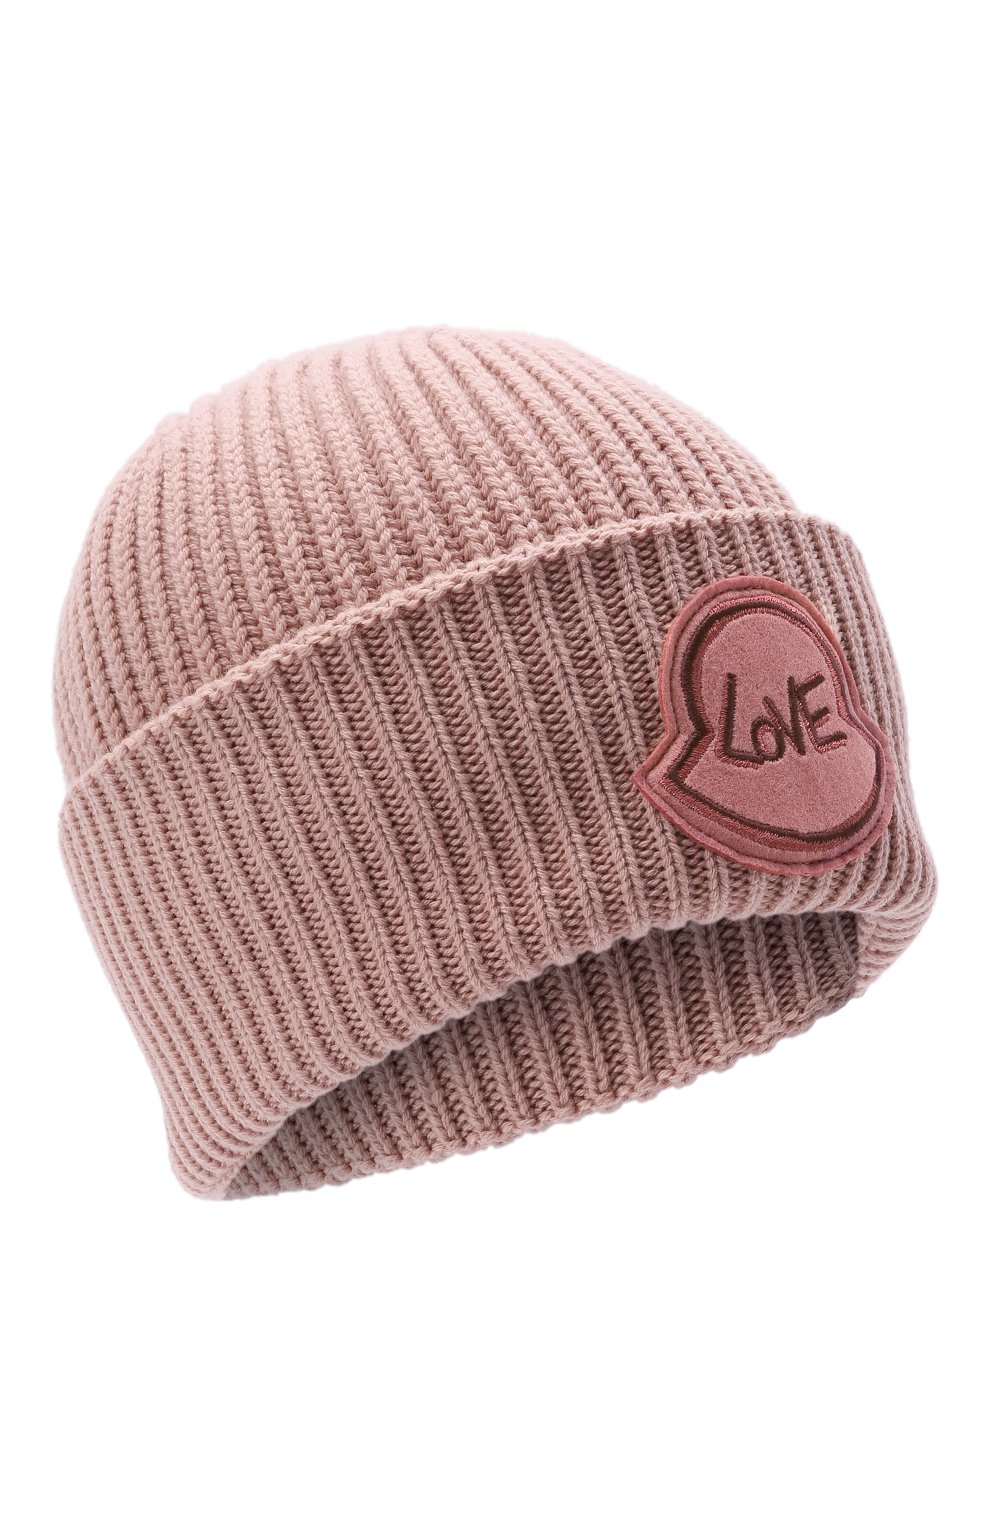 Женская шапка из шерсти и кашемира MONCLER розового цвета, арт. G2-093-3B000-44-M1127 | Фото 1 (Материал: Текстиль, Кашемир, Шерсть)